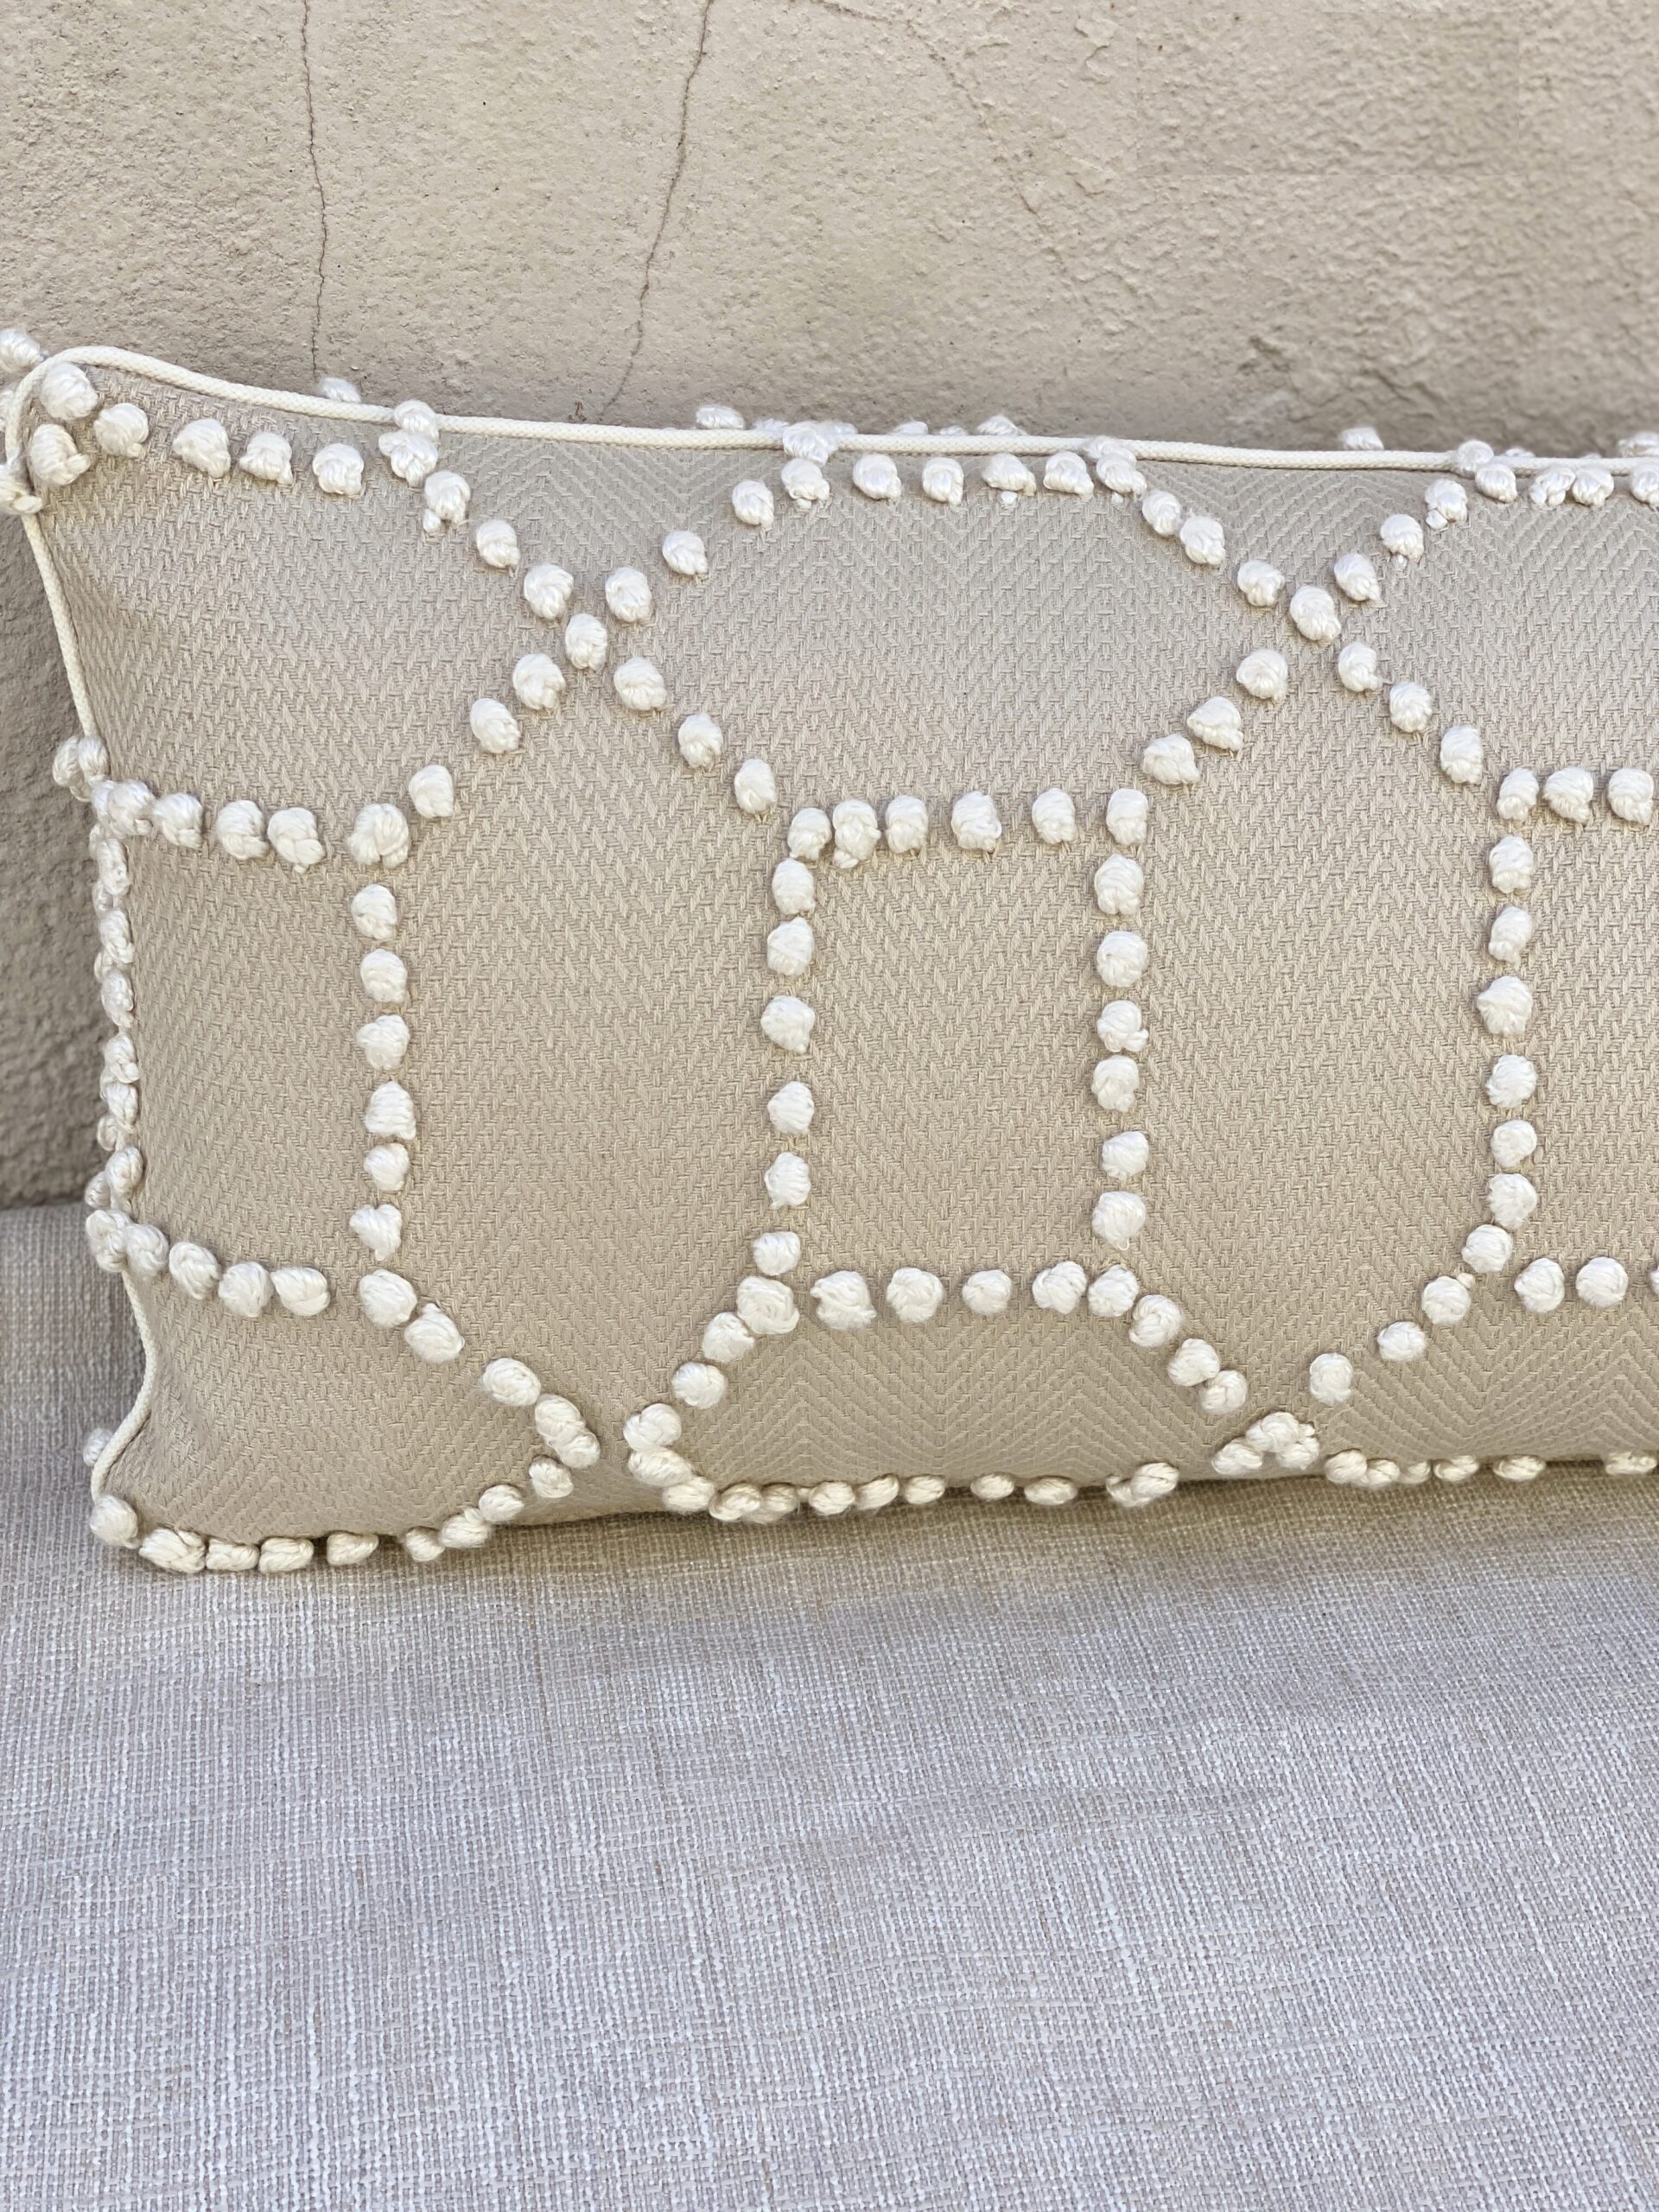 Schumacher Vento Embroidery Pillows